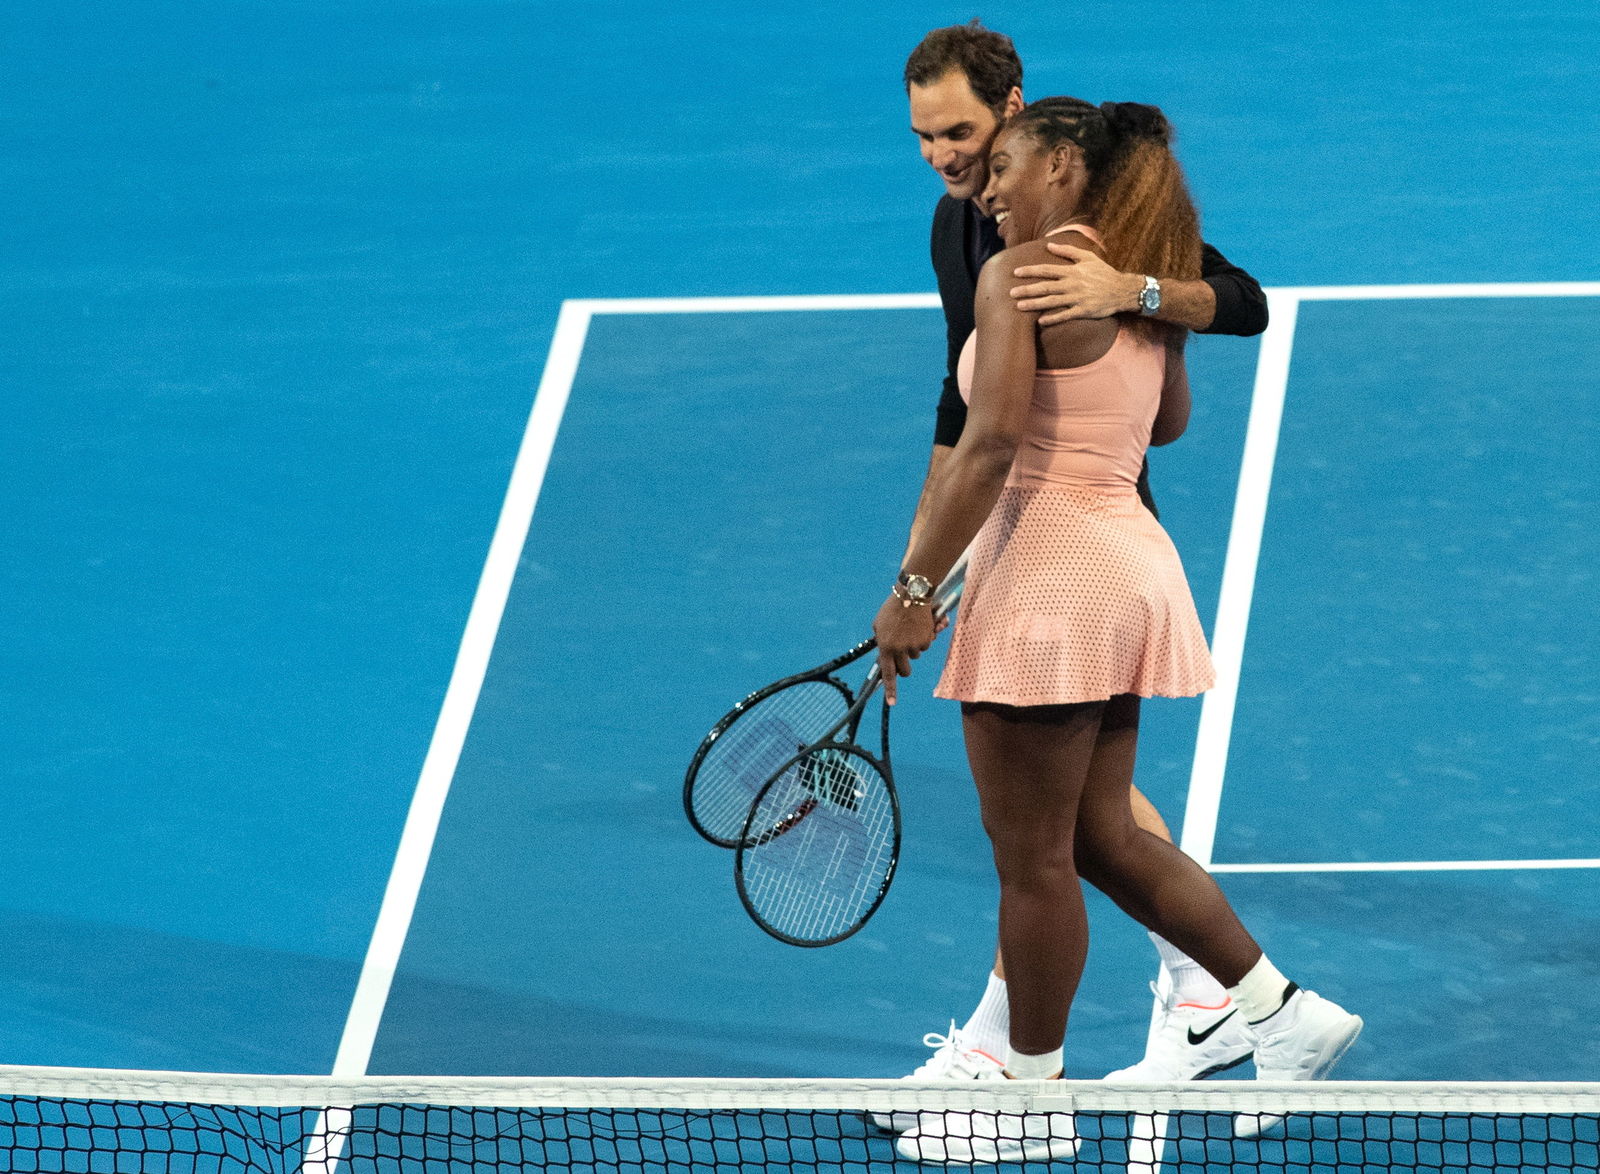 No hay que descartar a Serena ni a Federer